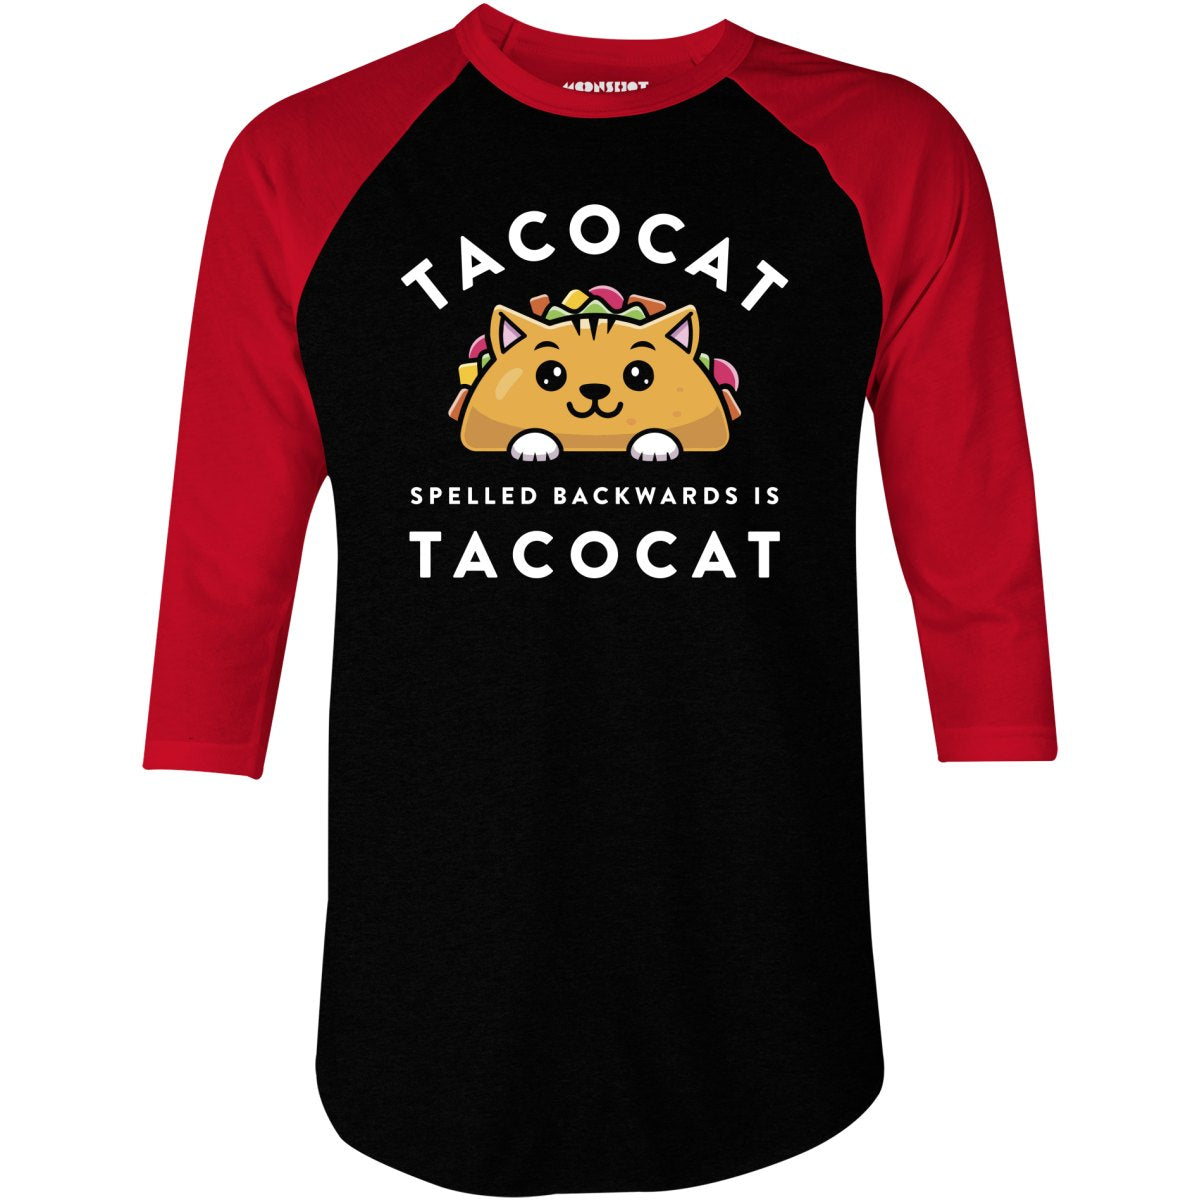 Tacocat Spelled Backwards - 3/4 Sleeve Raglan T-Shirt